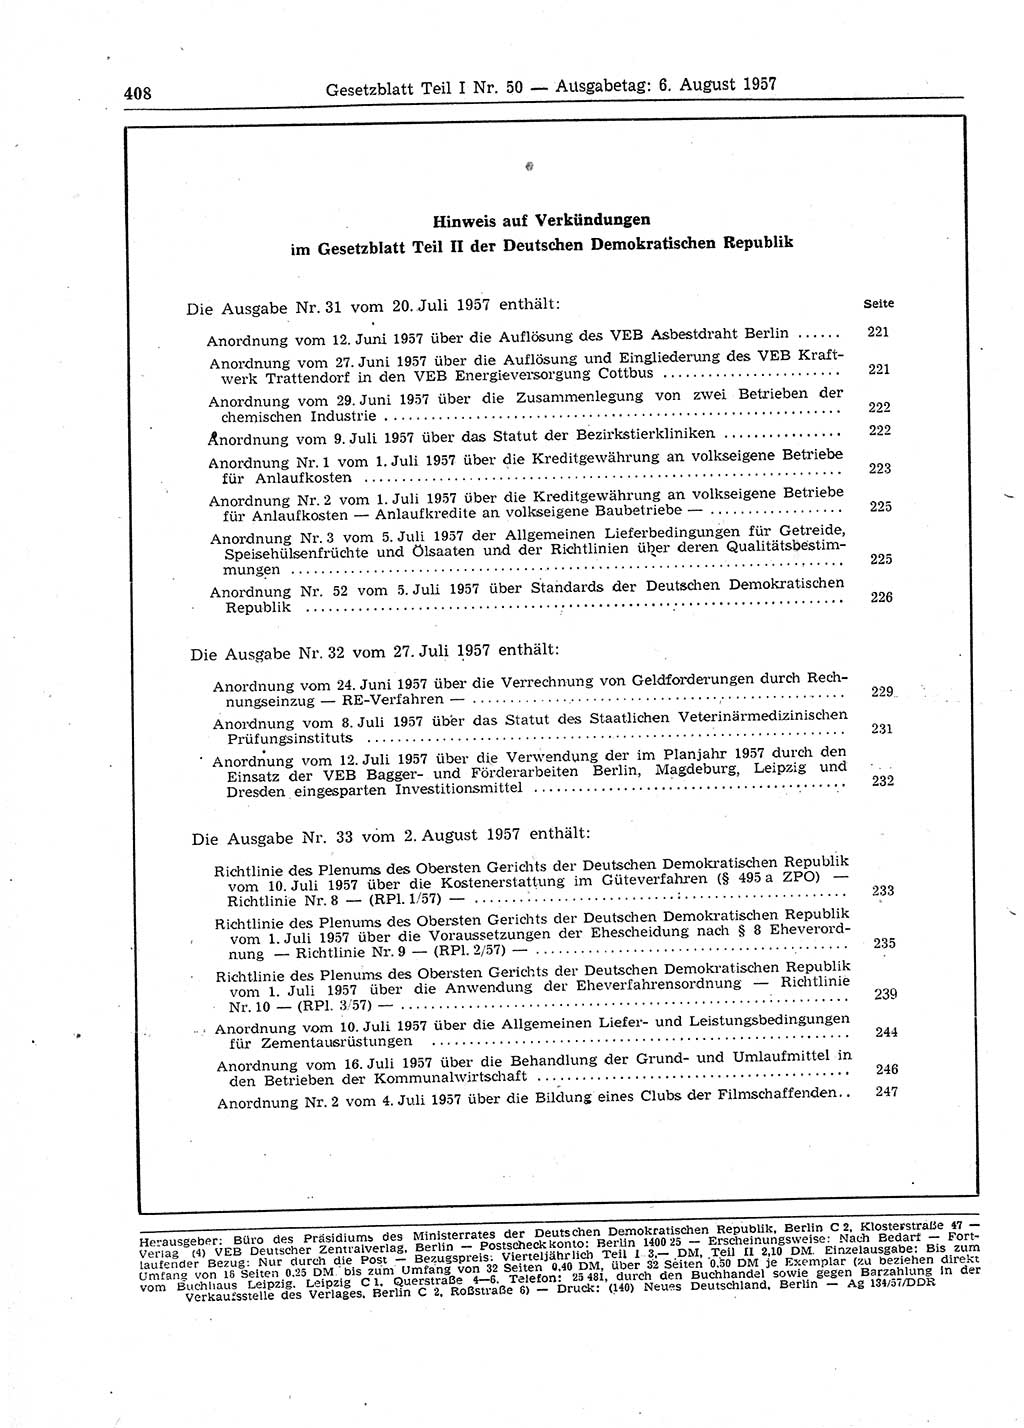 Gesetzblatt (GBl.) der Deutschen Demokratischen Republik (DDR) Teil Ⅰ 1957, Seite 408 (GBl. DDR Ⅰ 1957, S. 408)